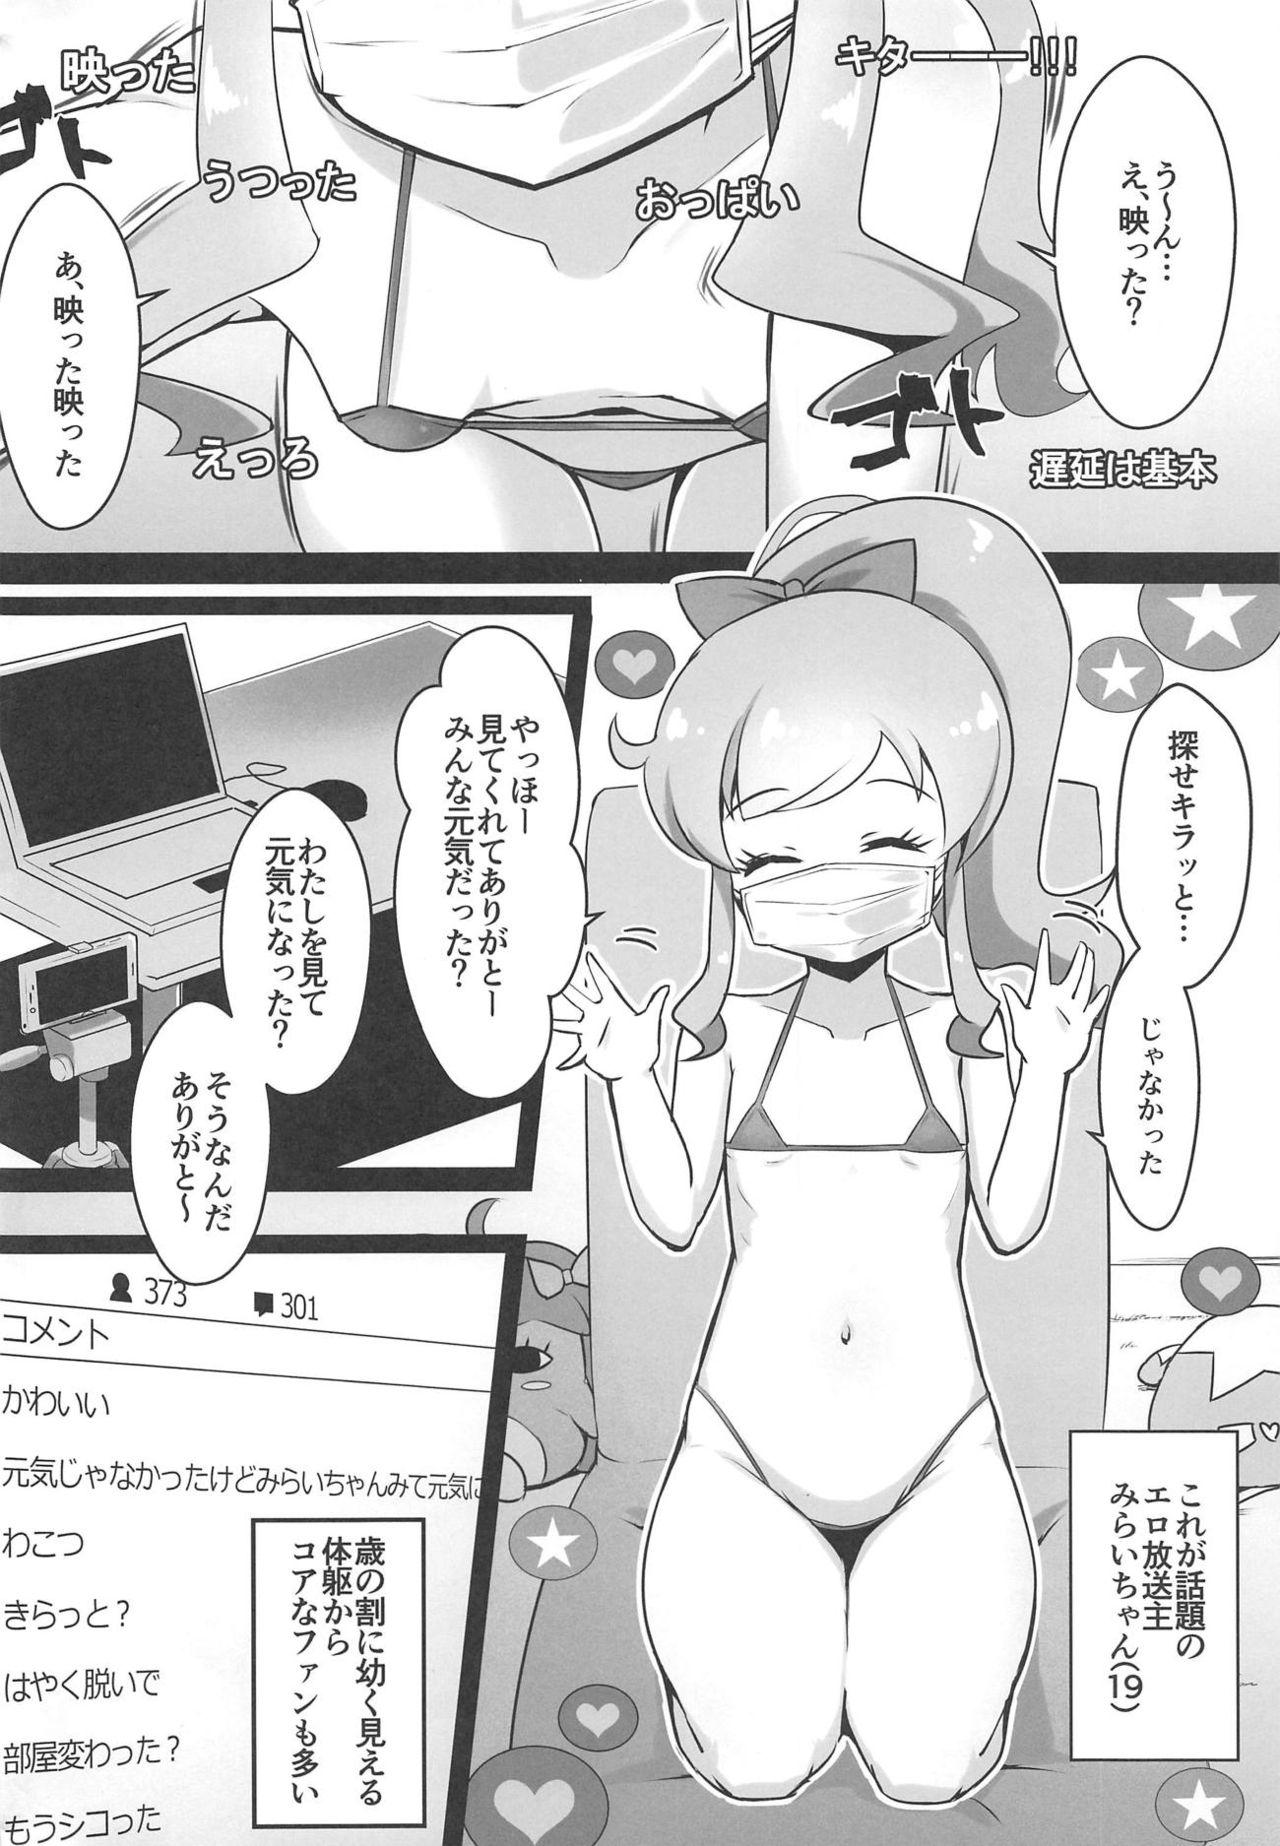 Grandma Ura Momo Channel - Onanie Haishin de Ii ne Atsumete Mita - Kiratto pri chan Hidden Cam - Page 3